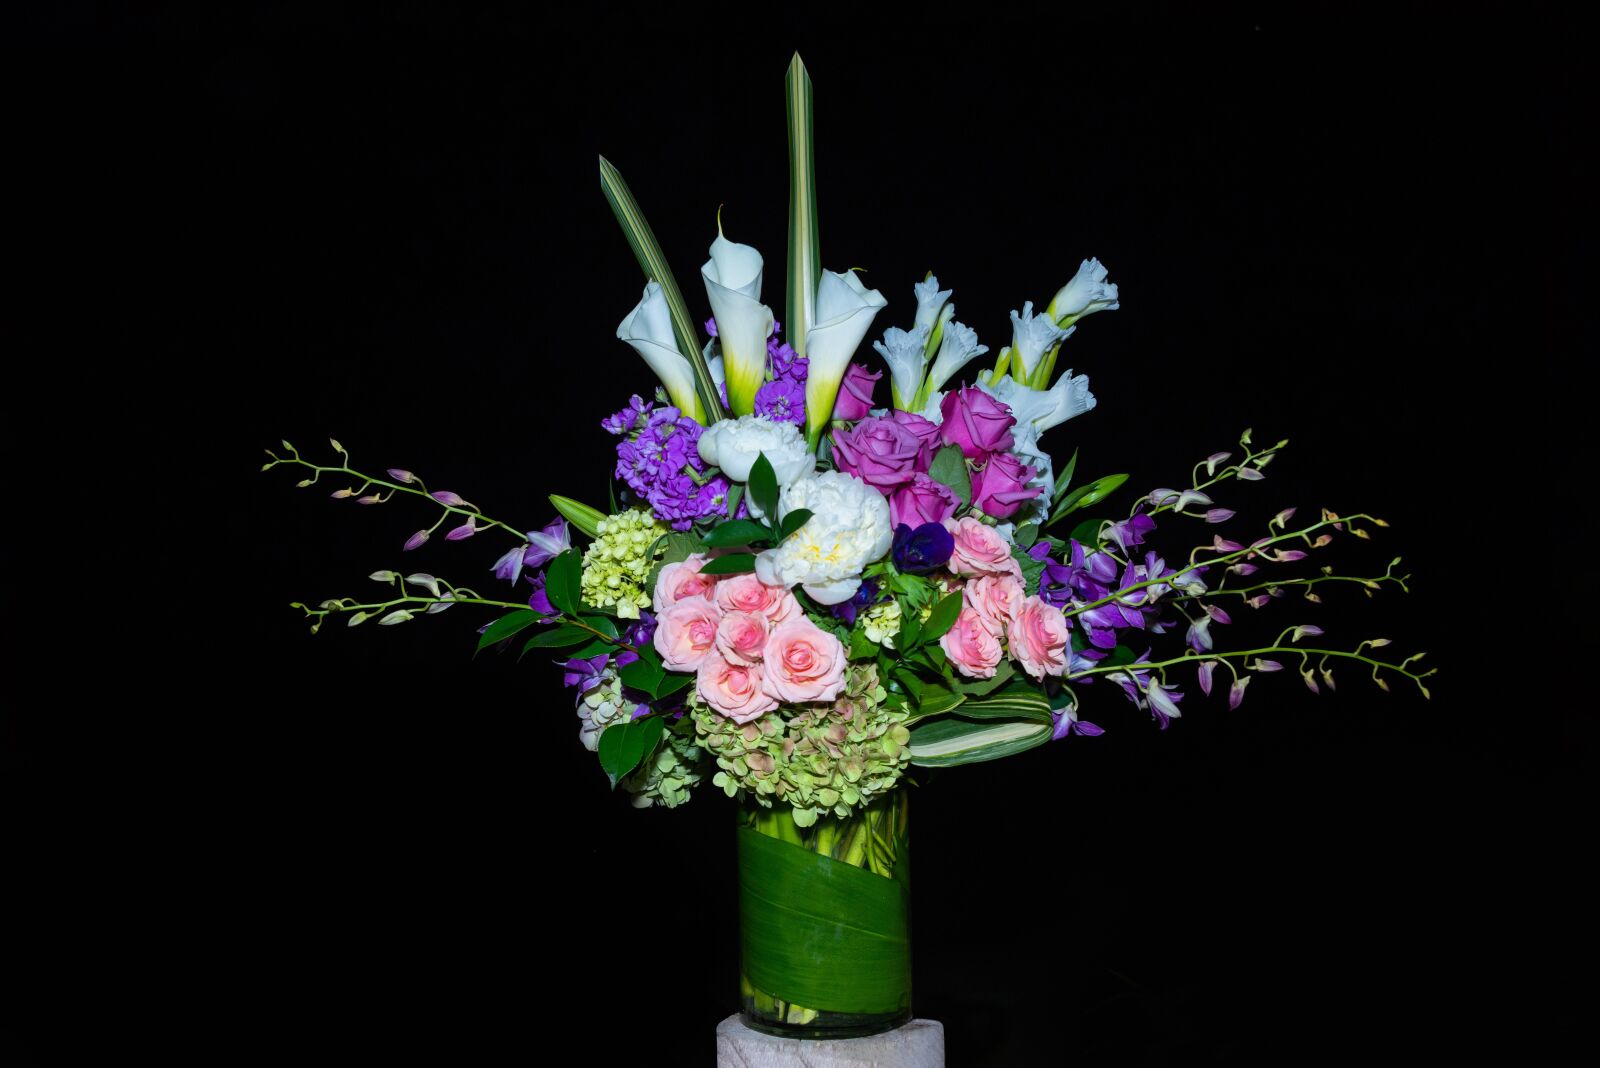 Nikon D800 sample photo. Flowers, arrangement, vase photography